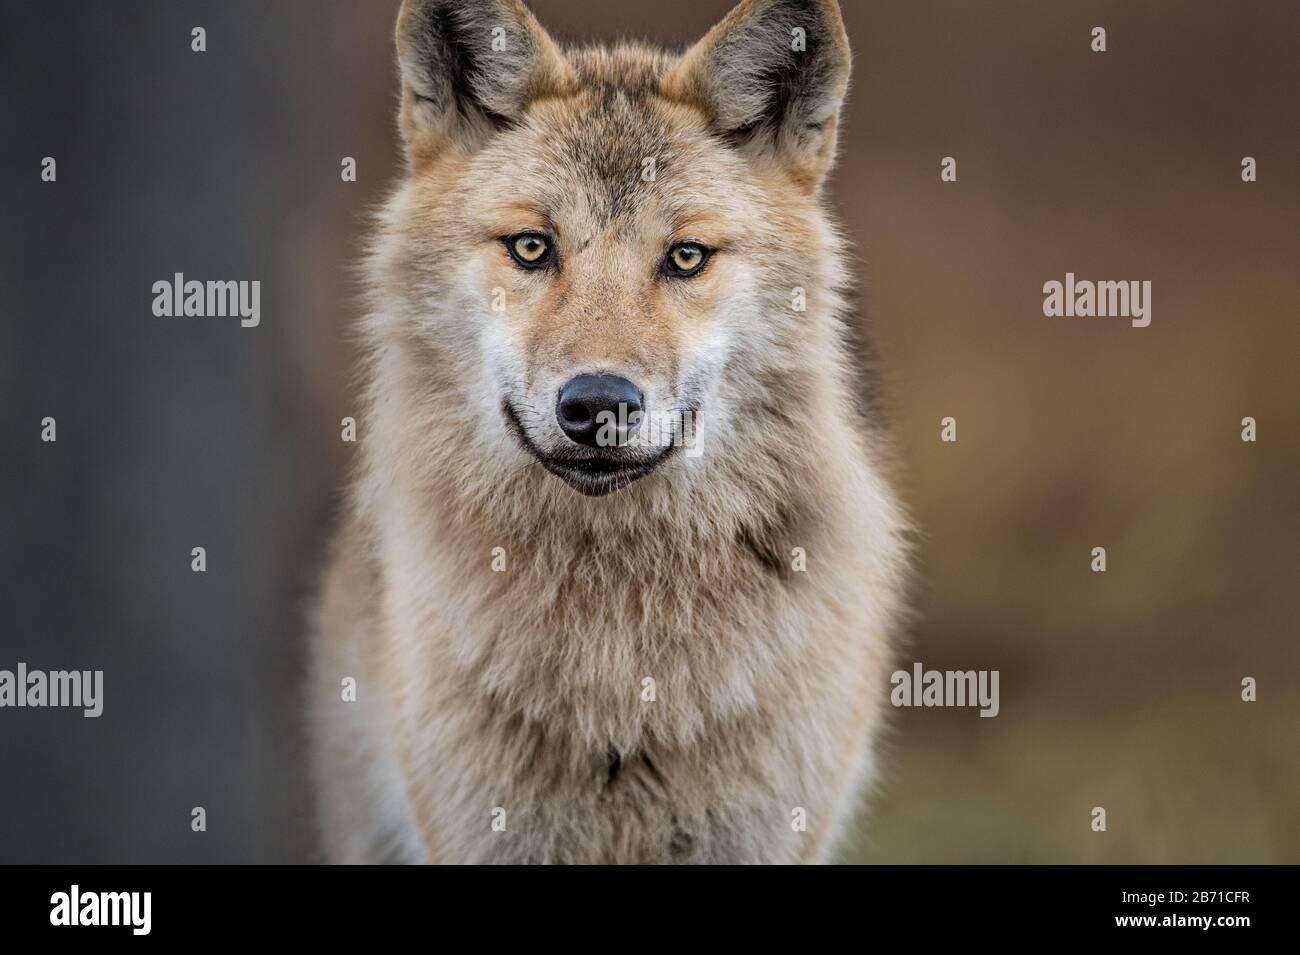 Сlose-up portrait d'un loup. Loup eurasien, également connu sous le nom de loup gris ou gris, également connu sous le nom de loup de bois. Nom scientifique: Canis lupus lupus. Natura Banque D'Images